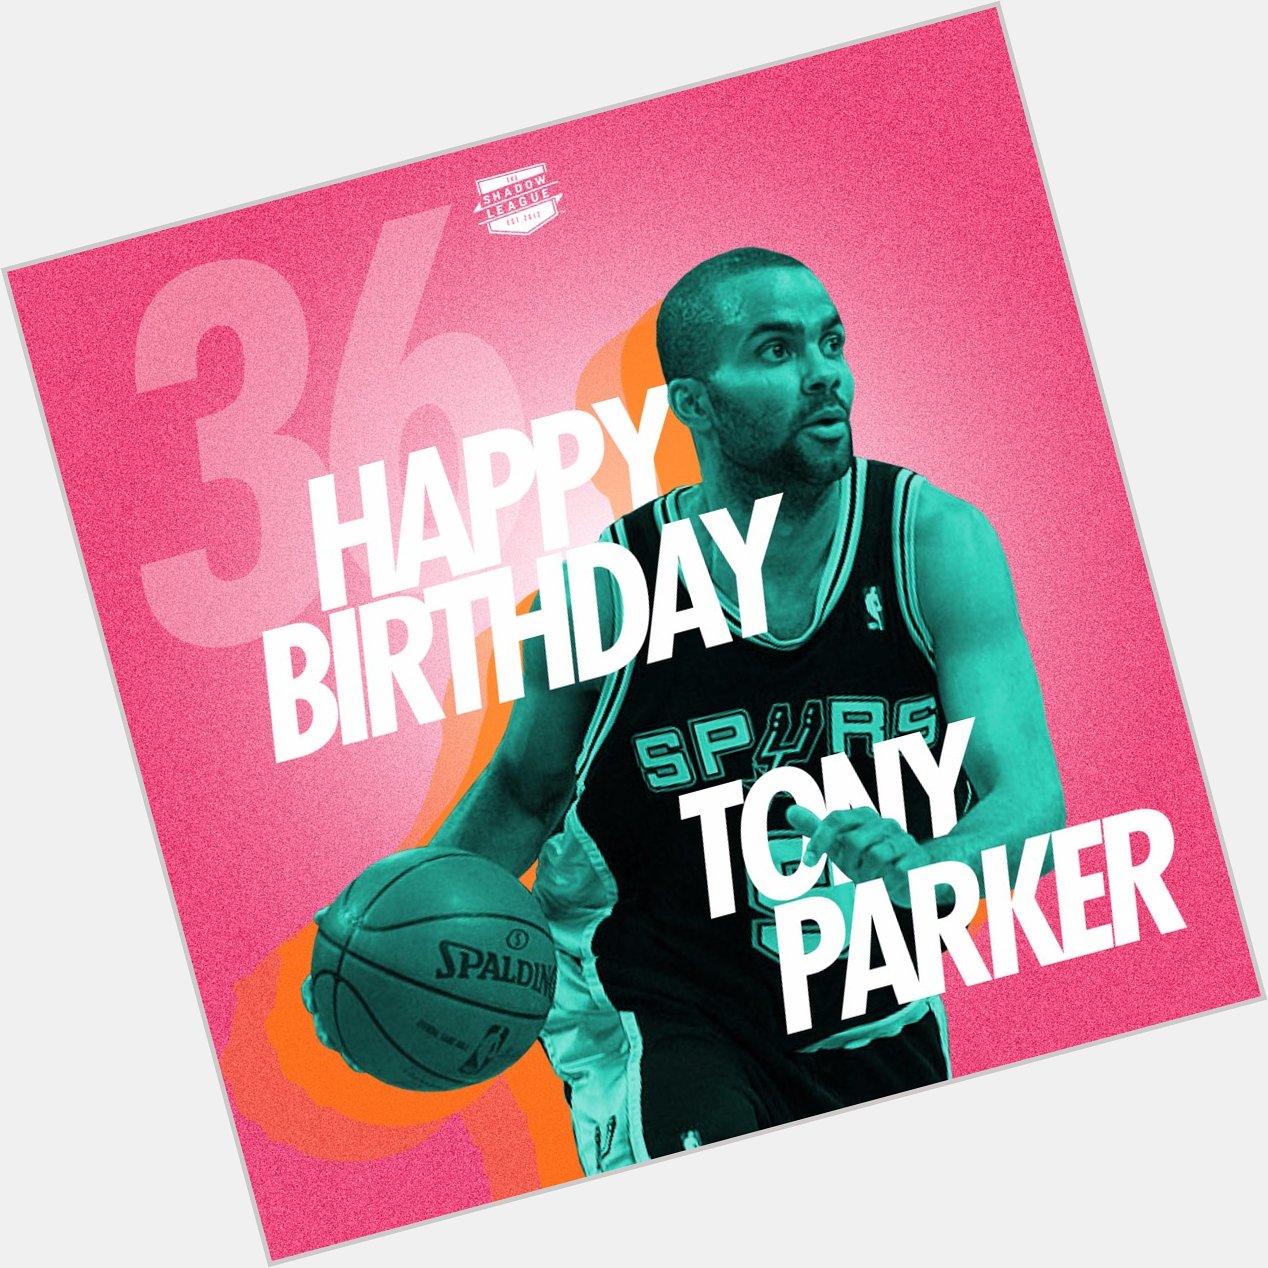 Happy 36th birthday to Tony Parker! 